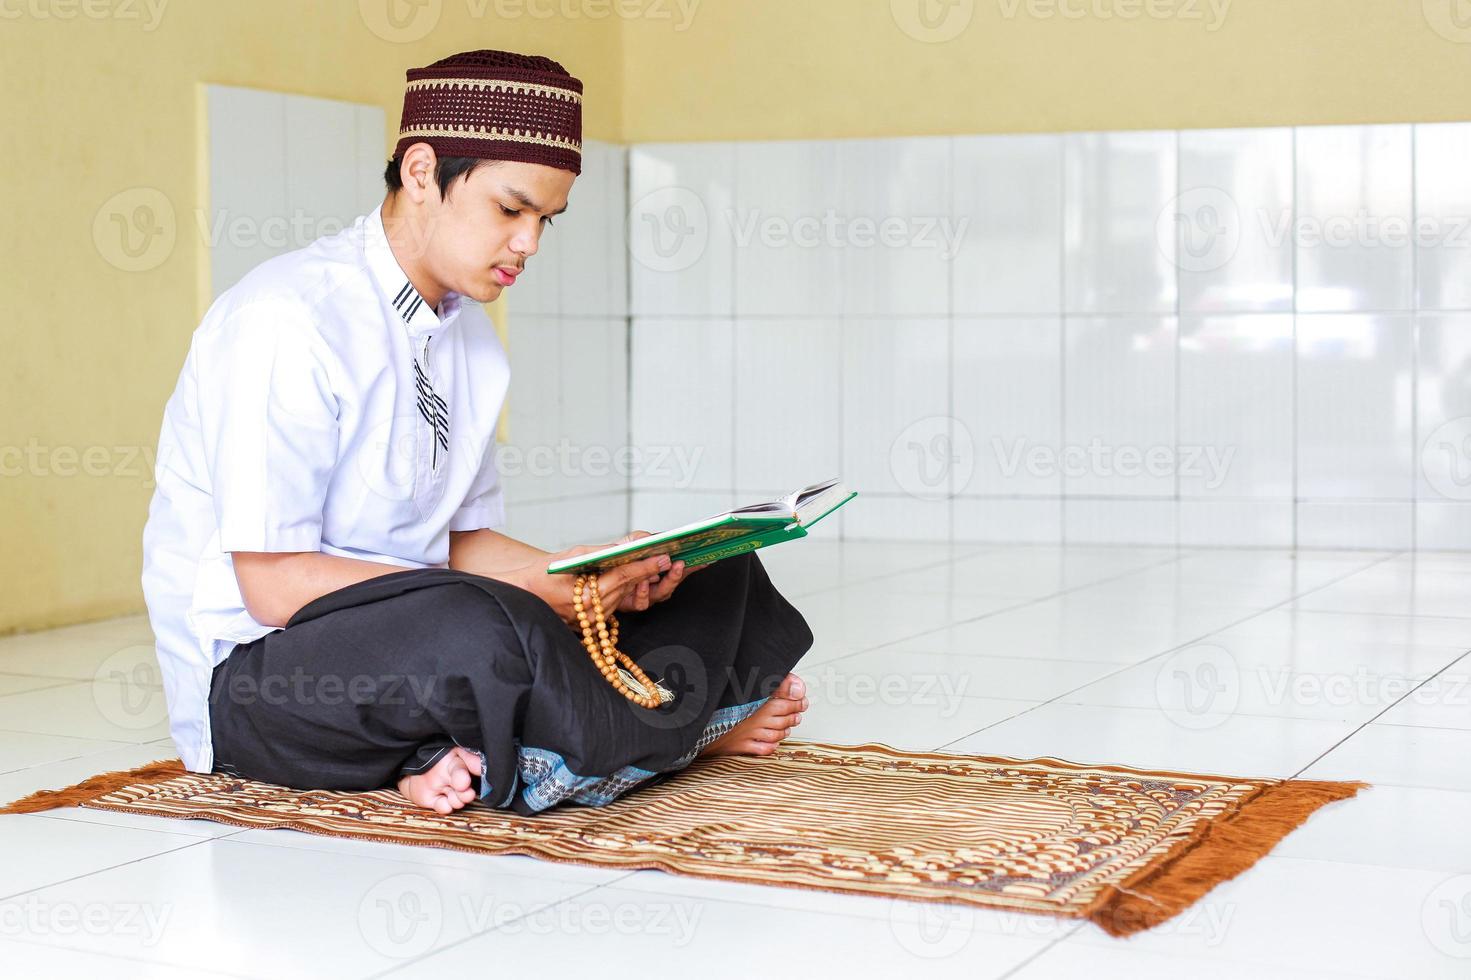 jovem muçulmano asiático segurando contas de oração e lendo o livro sagrado al-quran no tapete de oração foto